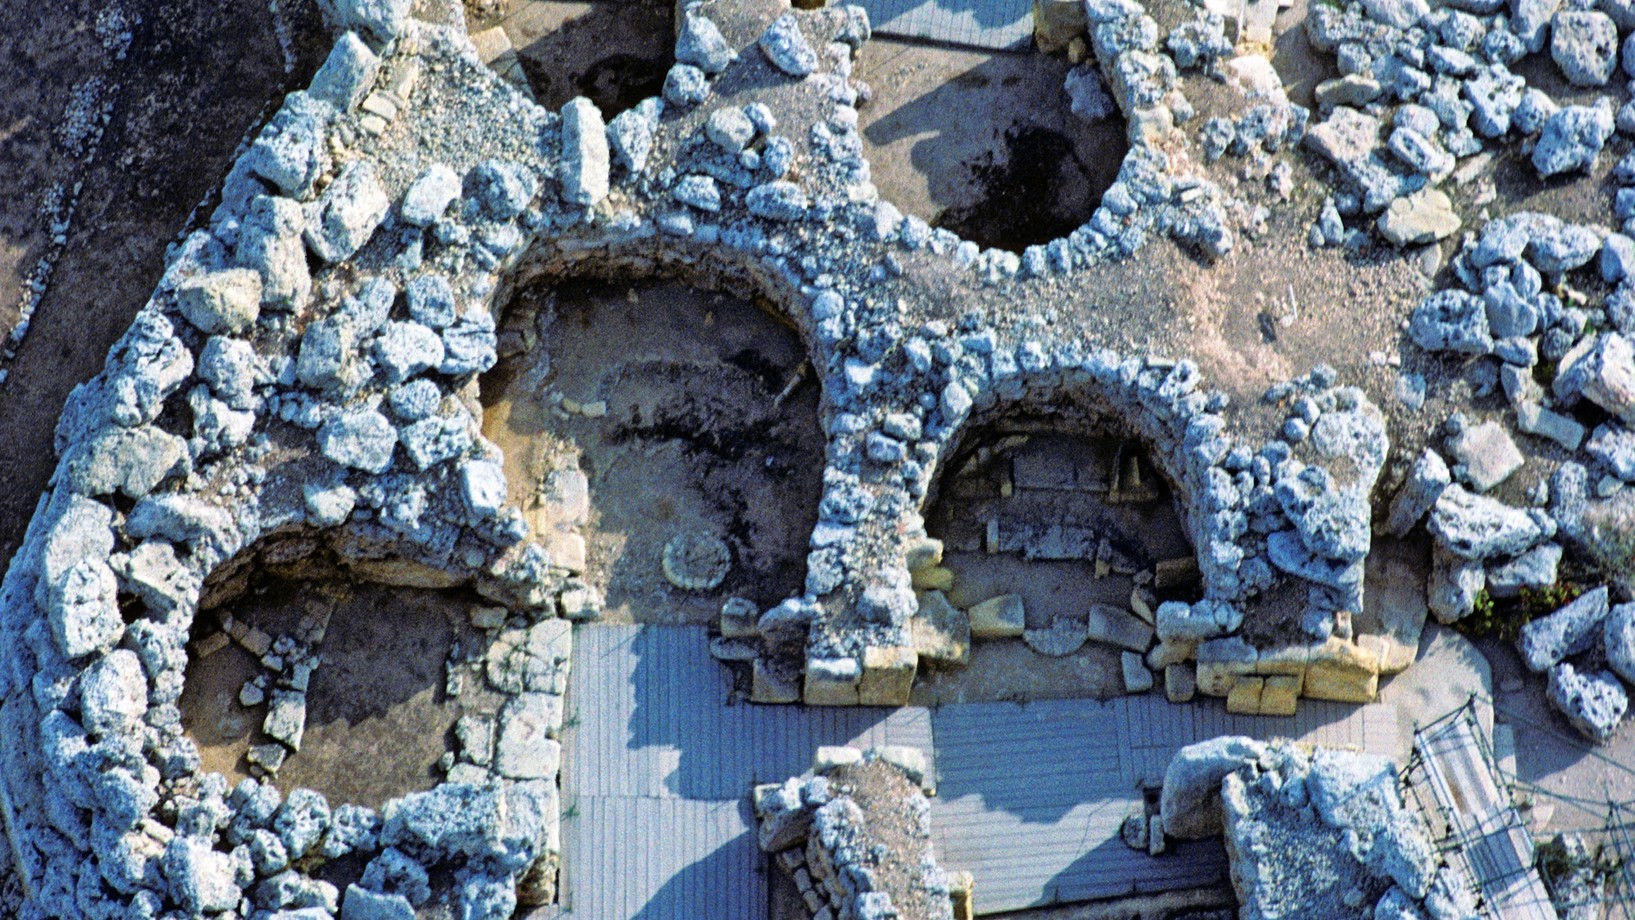 Der Doppeltempel von Ggantija auf der maltesischen Insel Gozo gehört zu den ältesten freistehenden Bauwerken der Menschheit. Das grössere und ältere der beiden Heiligtümer entstand um 3600 v.Chr. – ein Jahrtausend vor der Cheopspyramide.

Die Megalithbauten im maltesischen Archipel – 23 Anlagen unterschiedlicher Erhaltung auf der Hauptinsel Malta und auf Gozo – haben an Prominenz ständig zugelegt. Zunächst stiessen neue Datierungsverfahren die Ansicht um, die in den Megalithen des atlantischen Europa und…